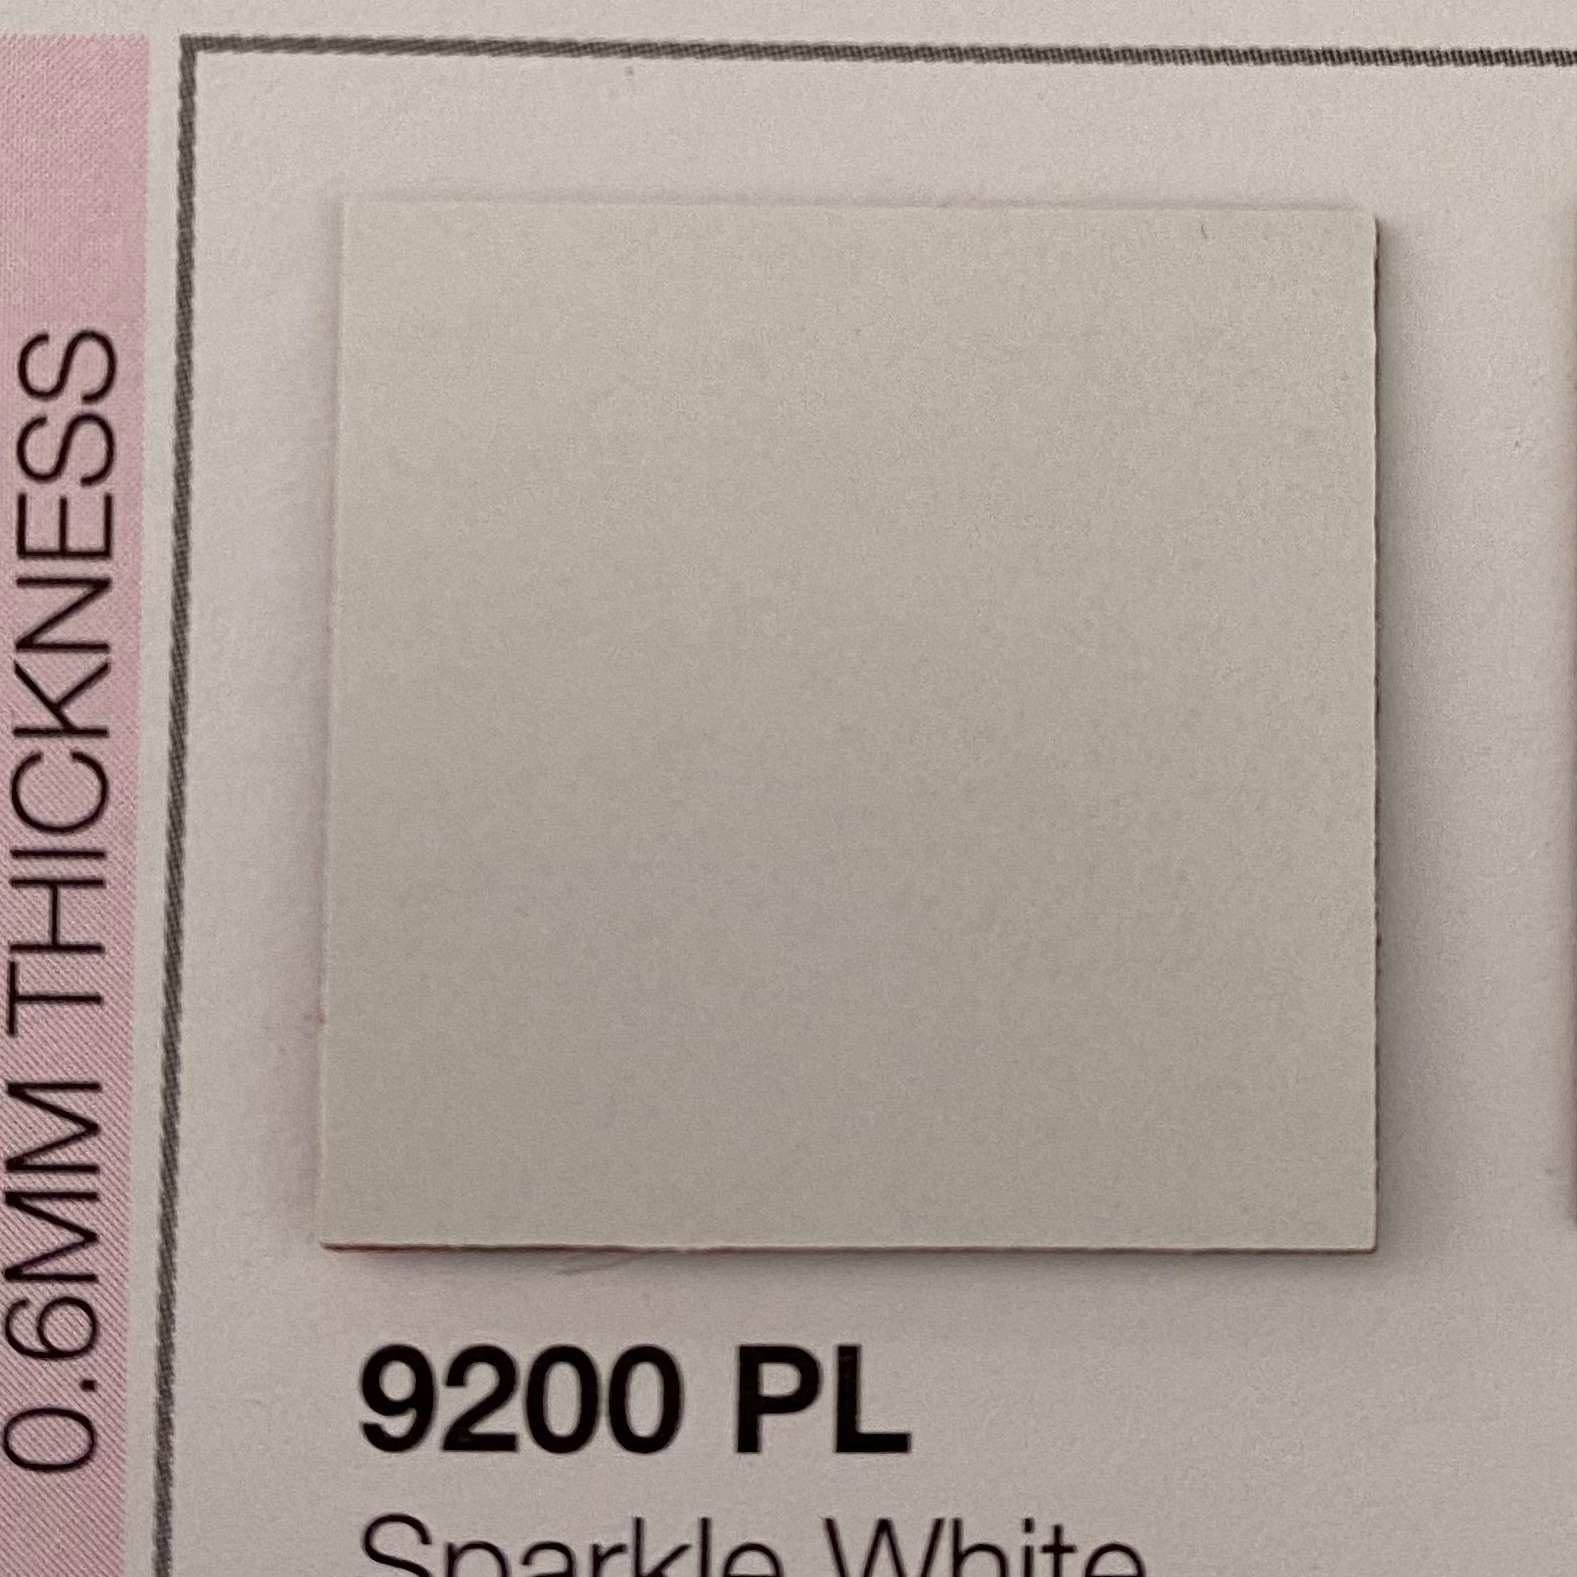 แผ่นโฟเมก้า TD board Td 9200 pl ผิวเรียบ ด้าน สีขาว ขนาด หนา 0.6 มม.  ขนาด 80x120 ซม